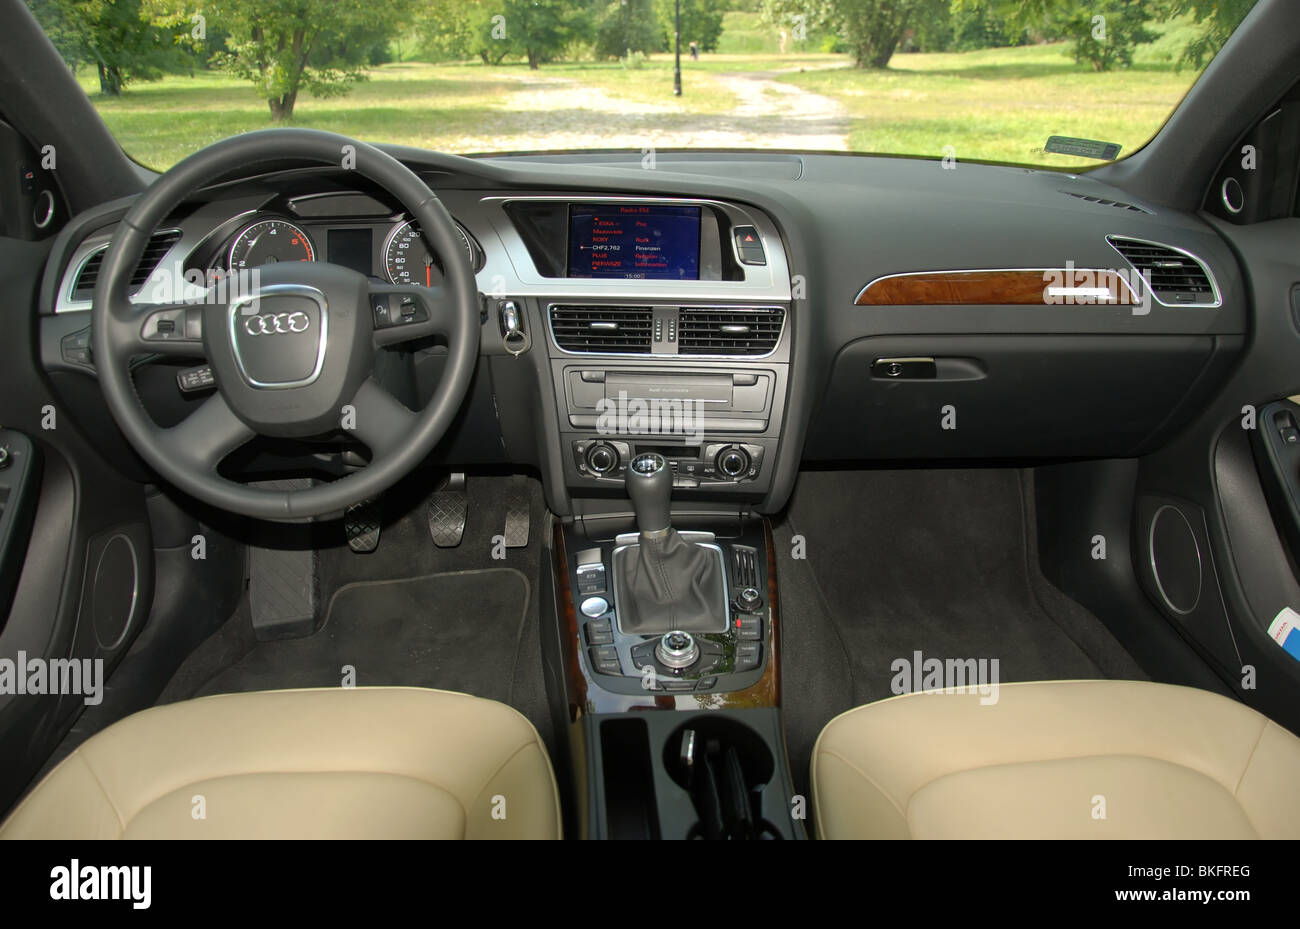 Audi dashboard immagini e fotografie stock ad alta risoluzione - Alamy